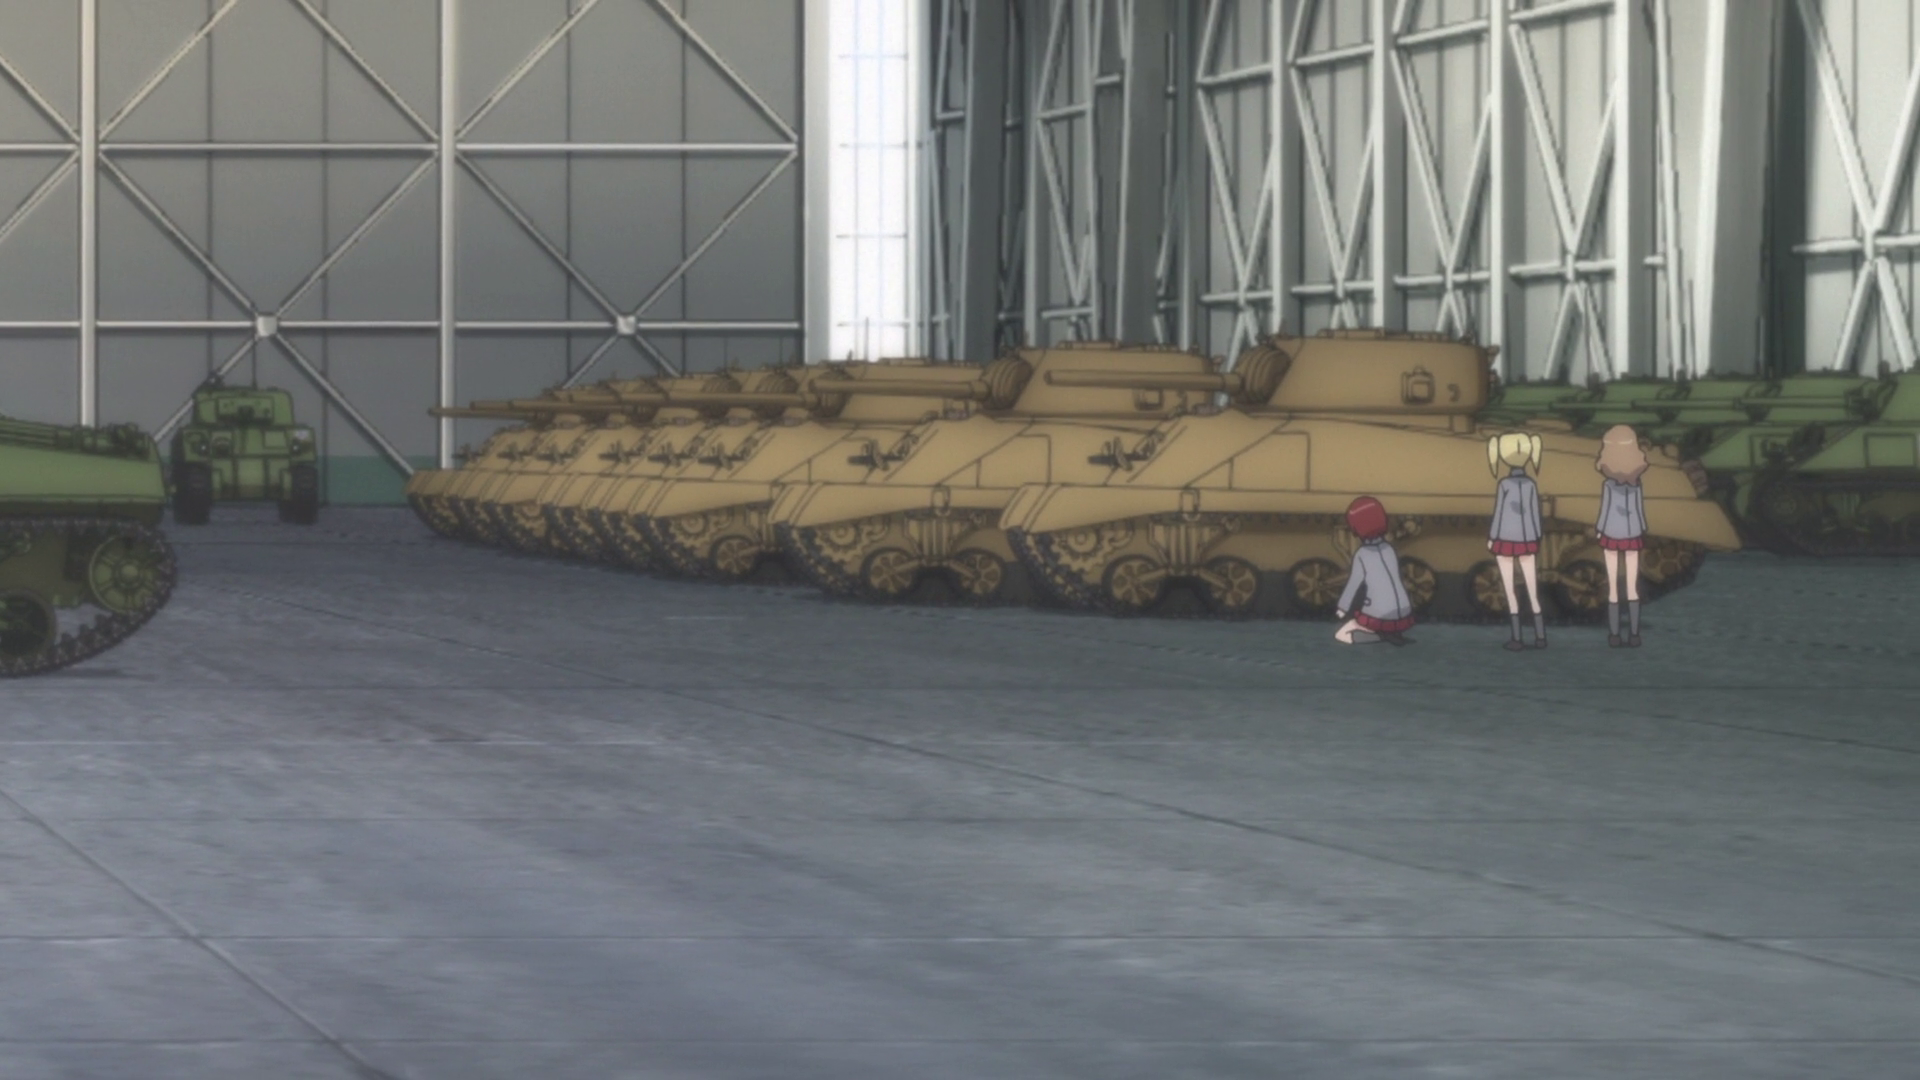 M4 Sherman, Girls und Panzer Wiki